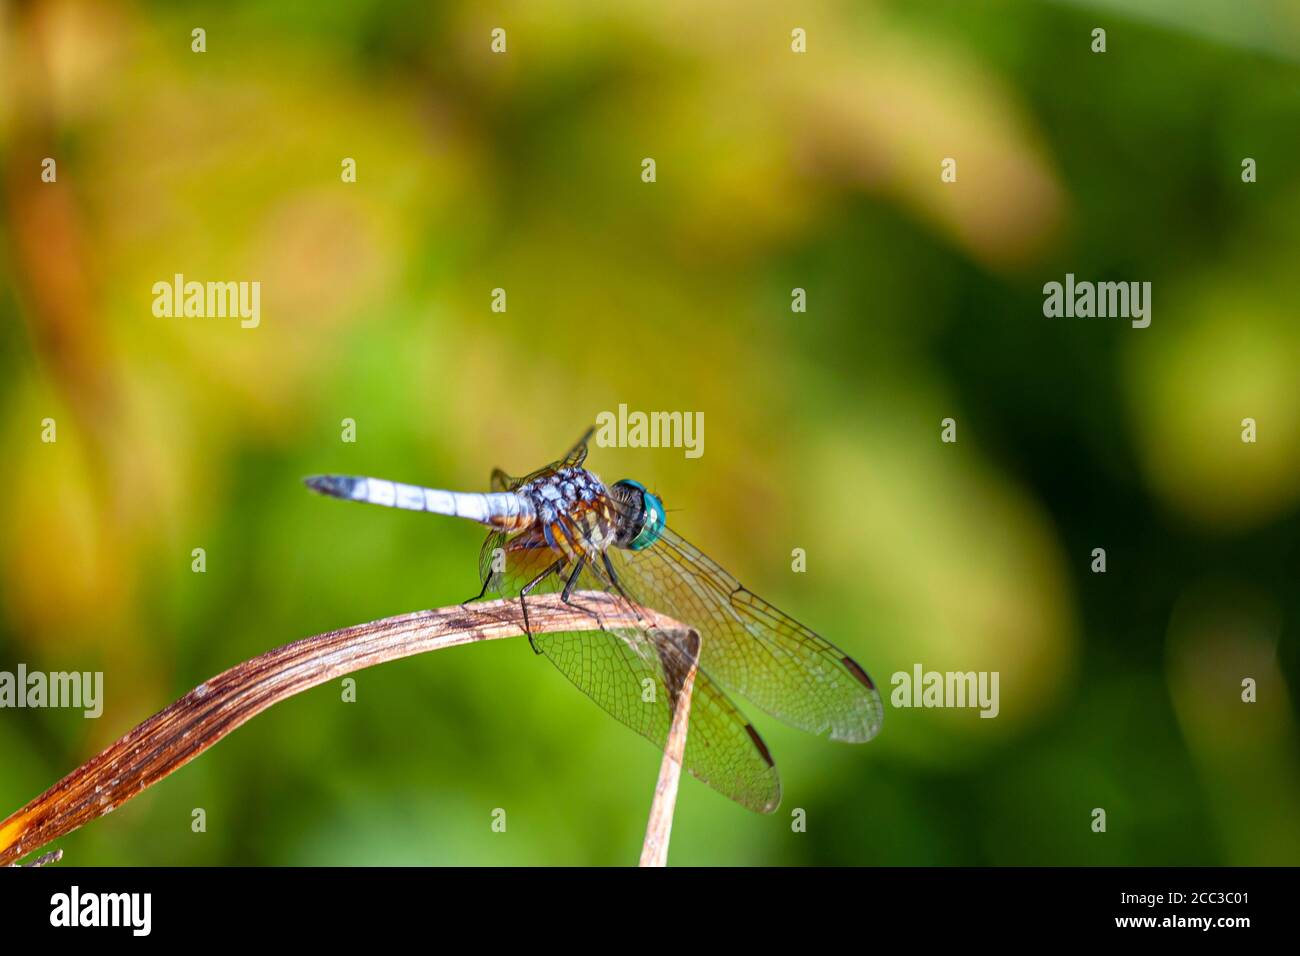 Une image isolée en gros plan d'une libellule dasher bleu vif (Pachydipax longipennis) sur un bâton. Cette photo de vue latérale affiche des dégradés de couleurs Banque D'Images